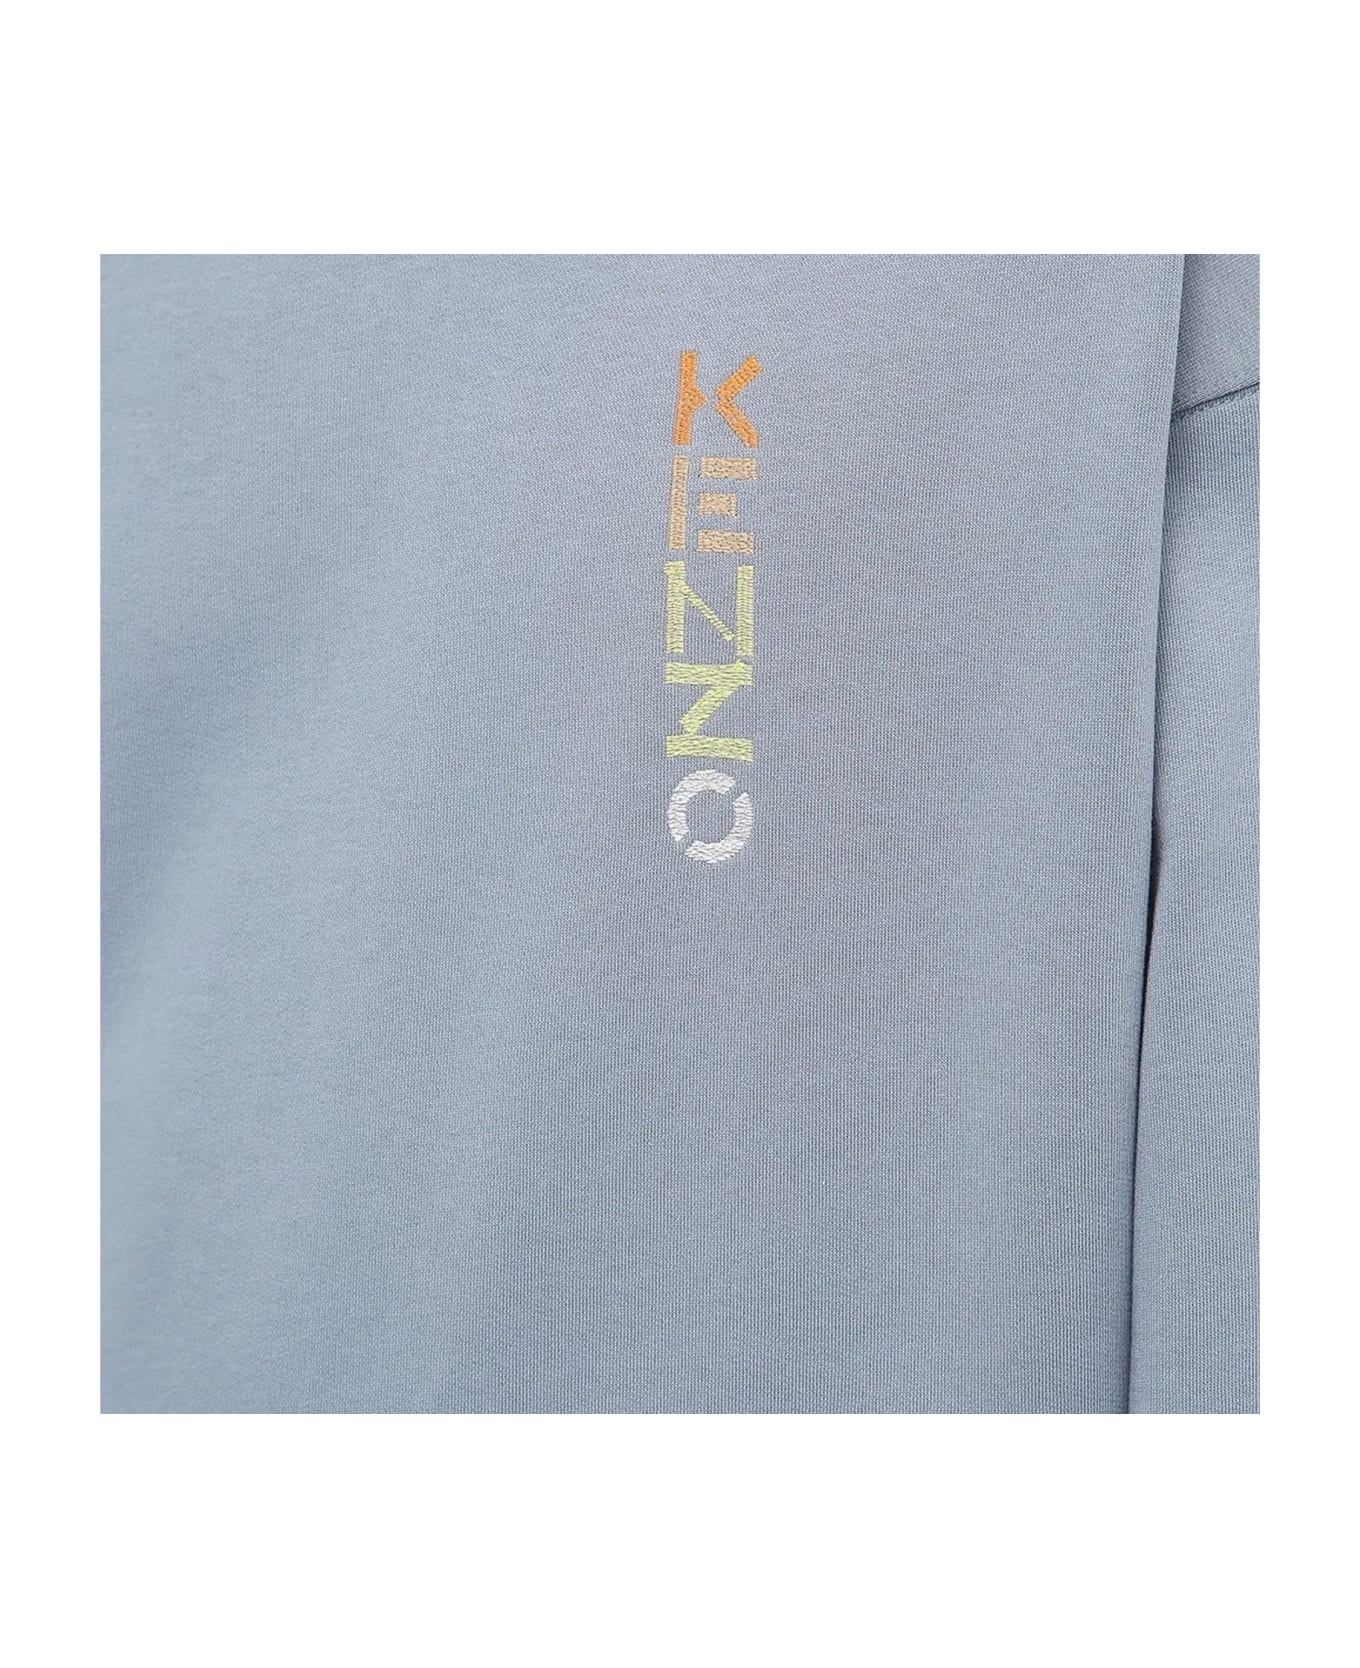 Kenzo Oversize Logo Sweatshirt - Blue